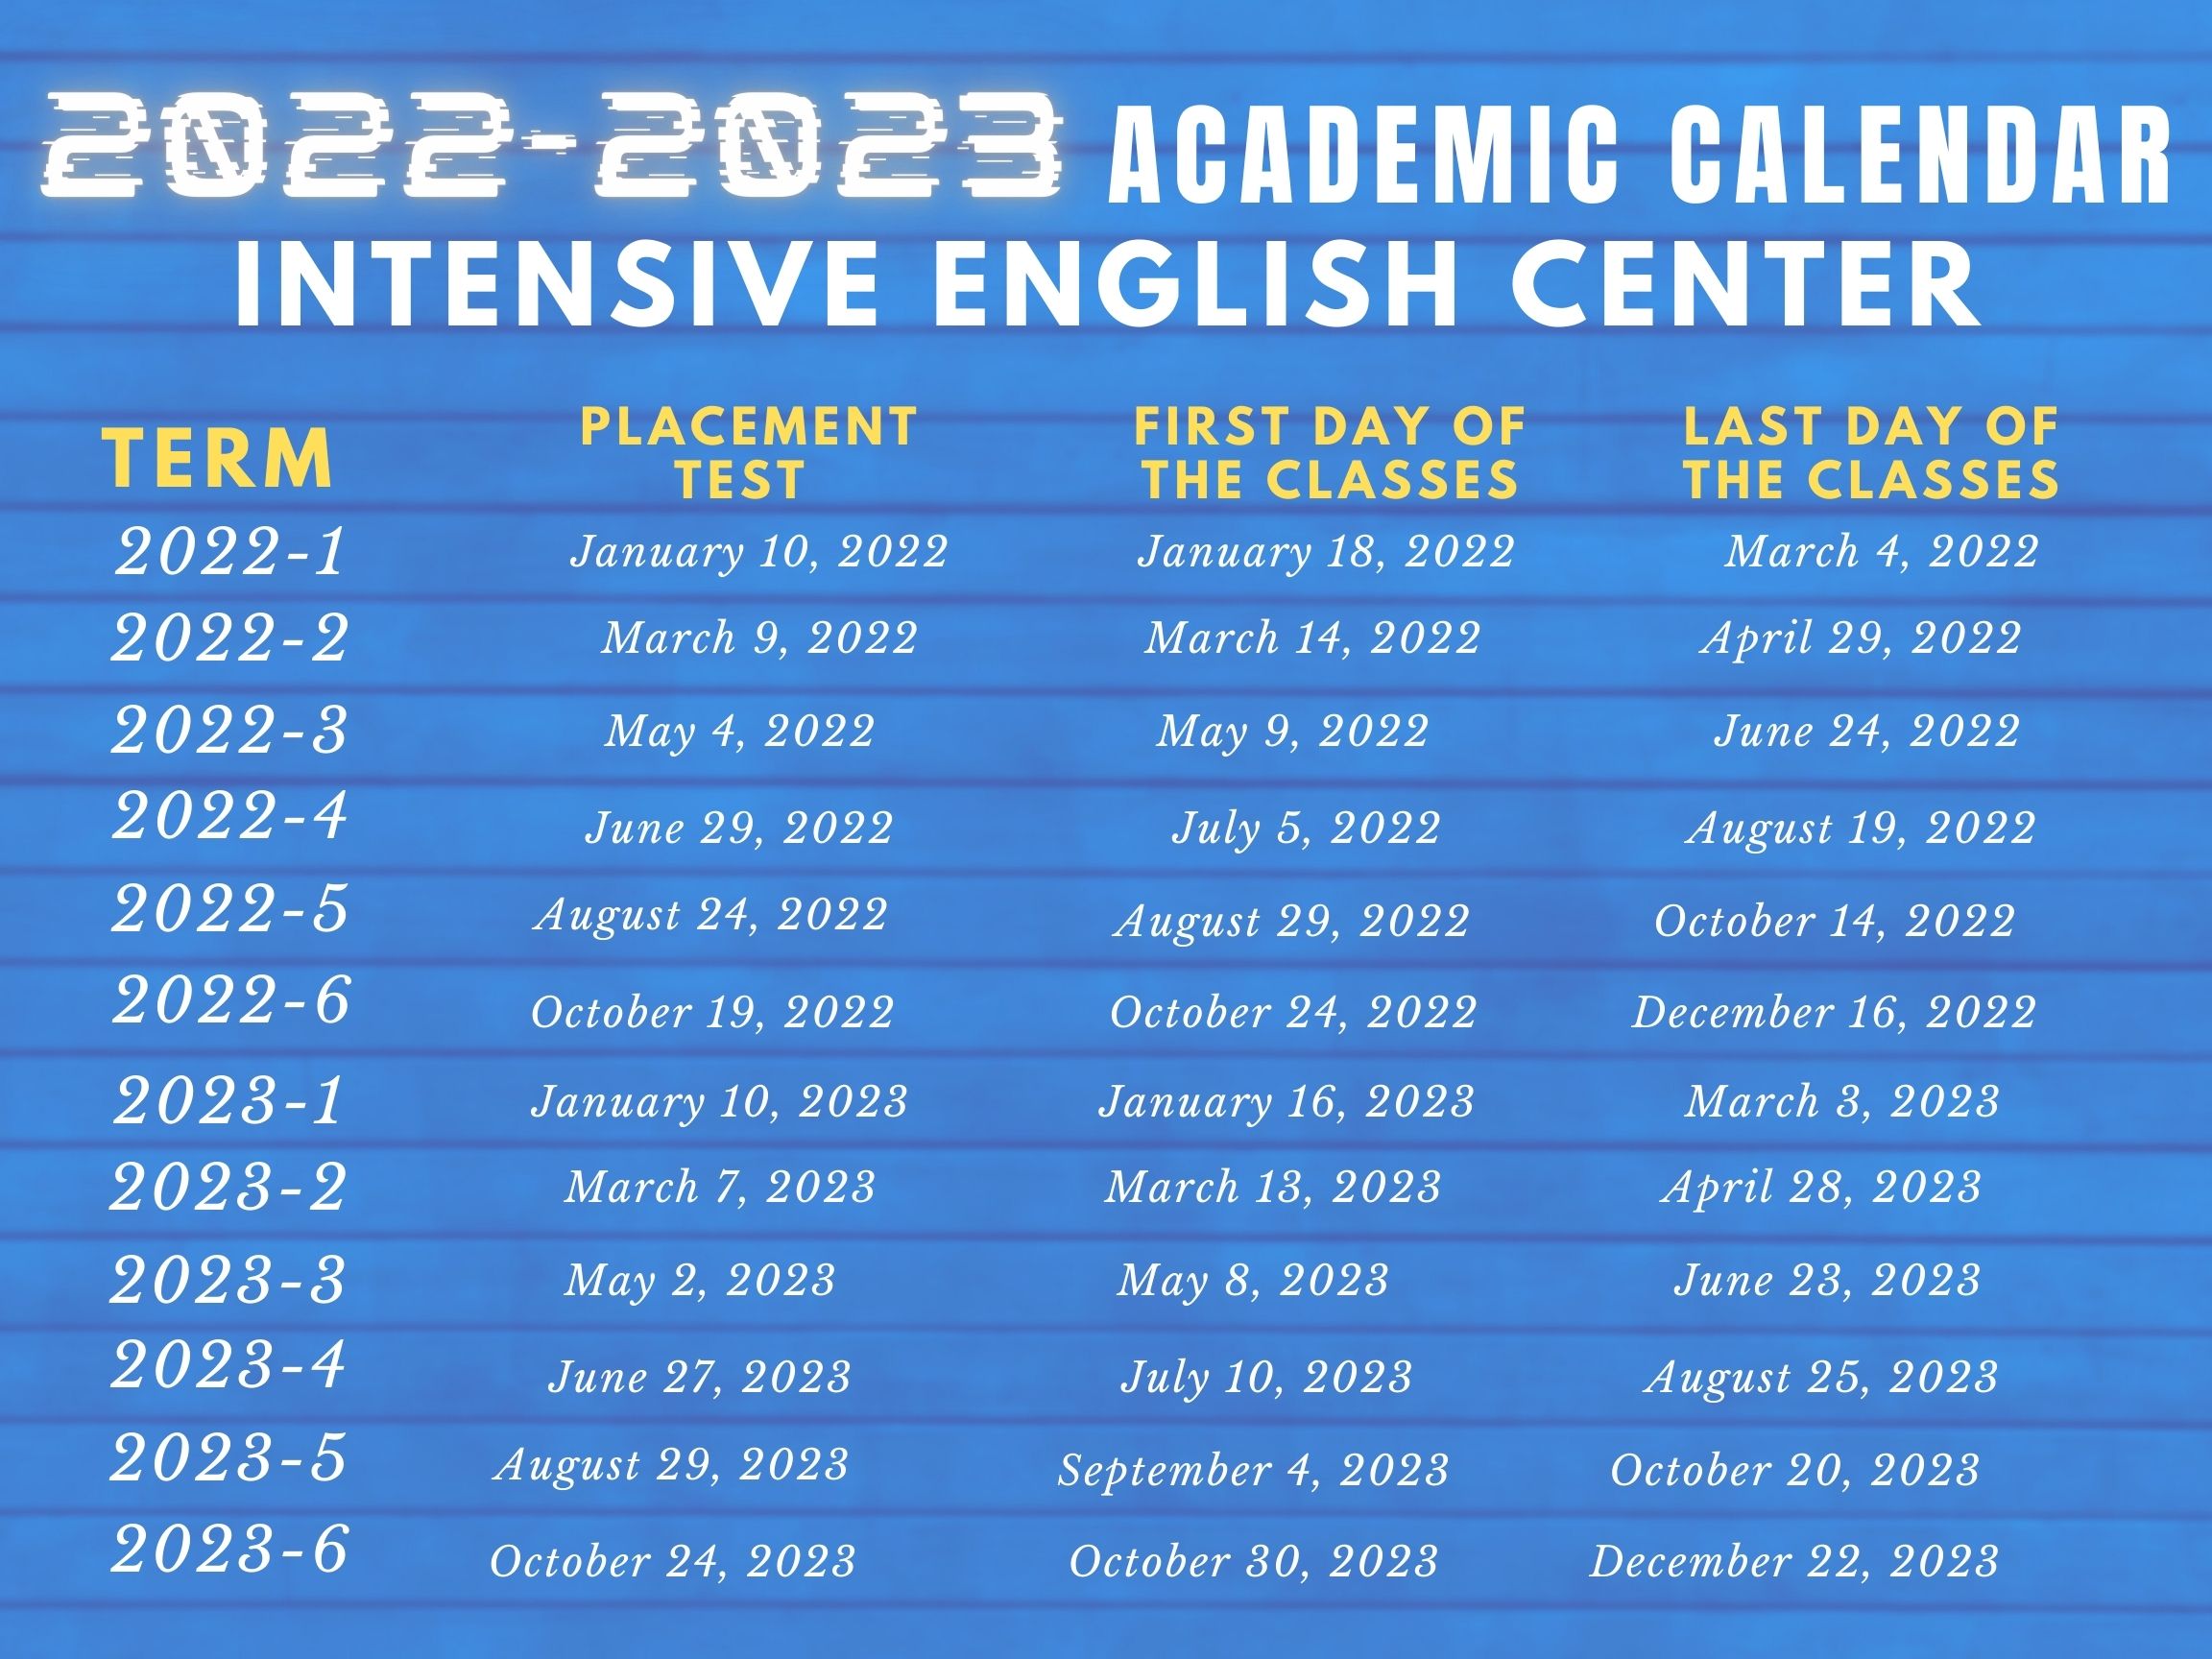 Tsu Academic Calendar 2022 Calendar